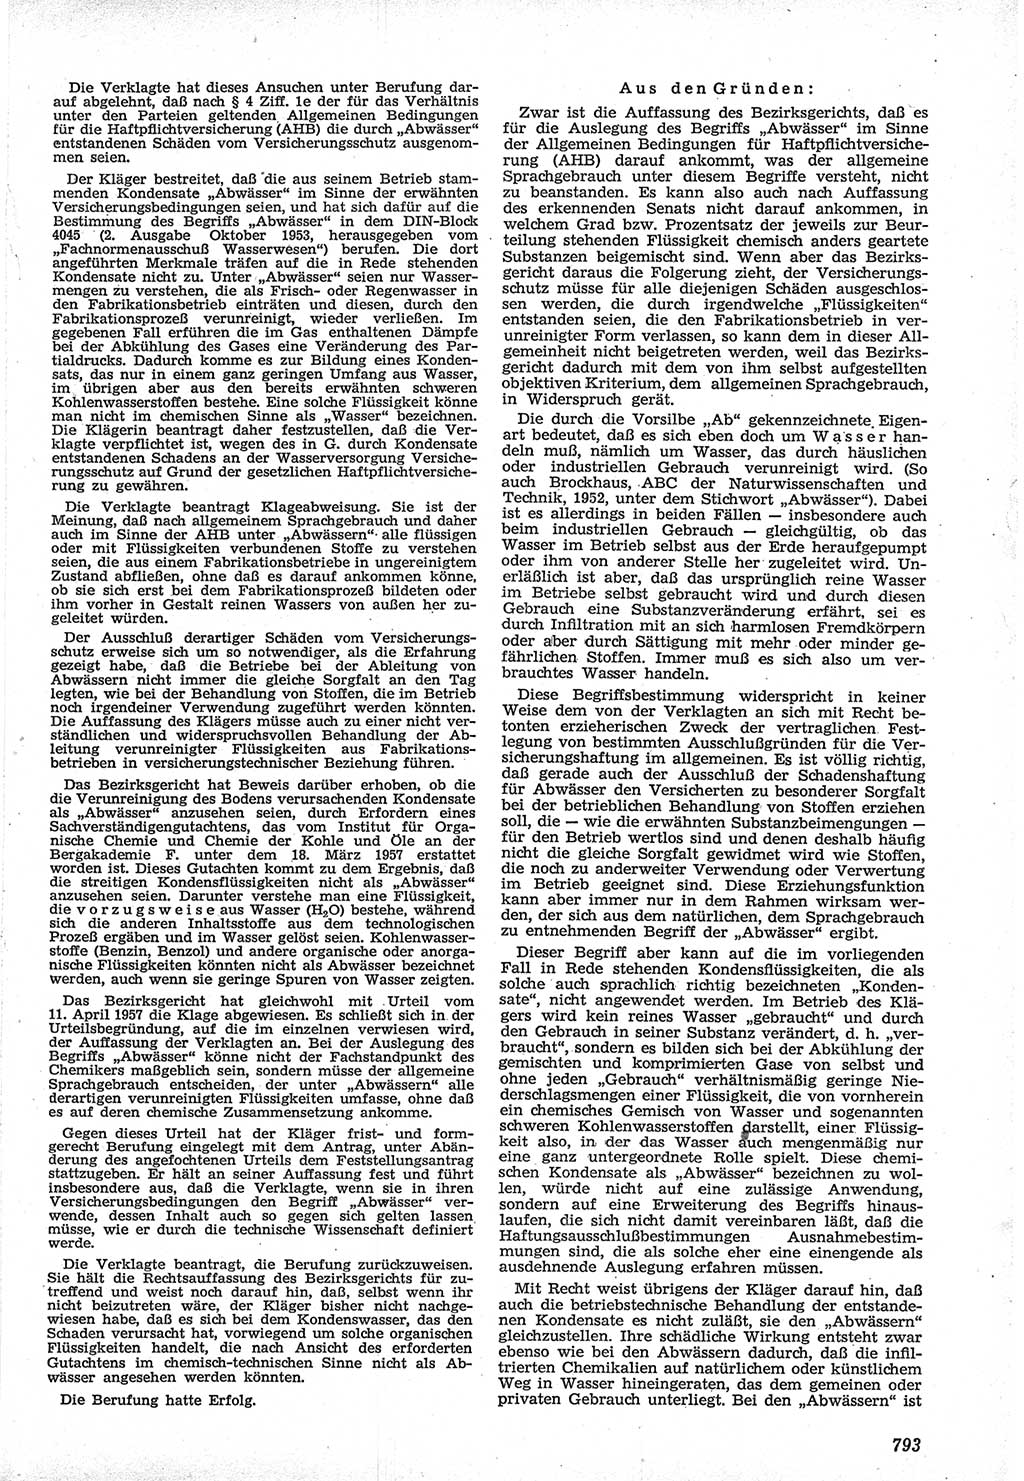 Neue Justiz (NJ), Zeitschrift für Recht und Rechtswissenschaft [Deutsche Demokratische Republik (DDR)], 12. Jahrgang 1958, Seite 793 (NJ DDR 1958, S. 793)